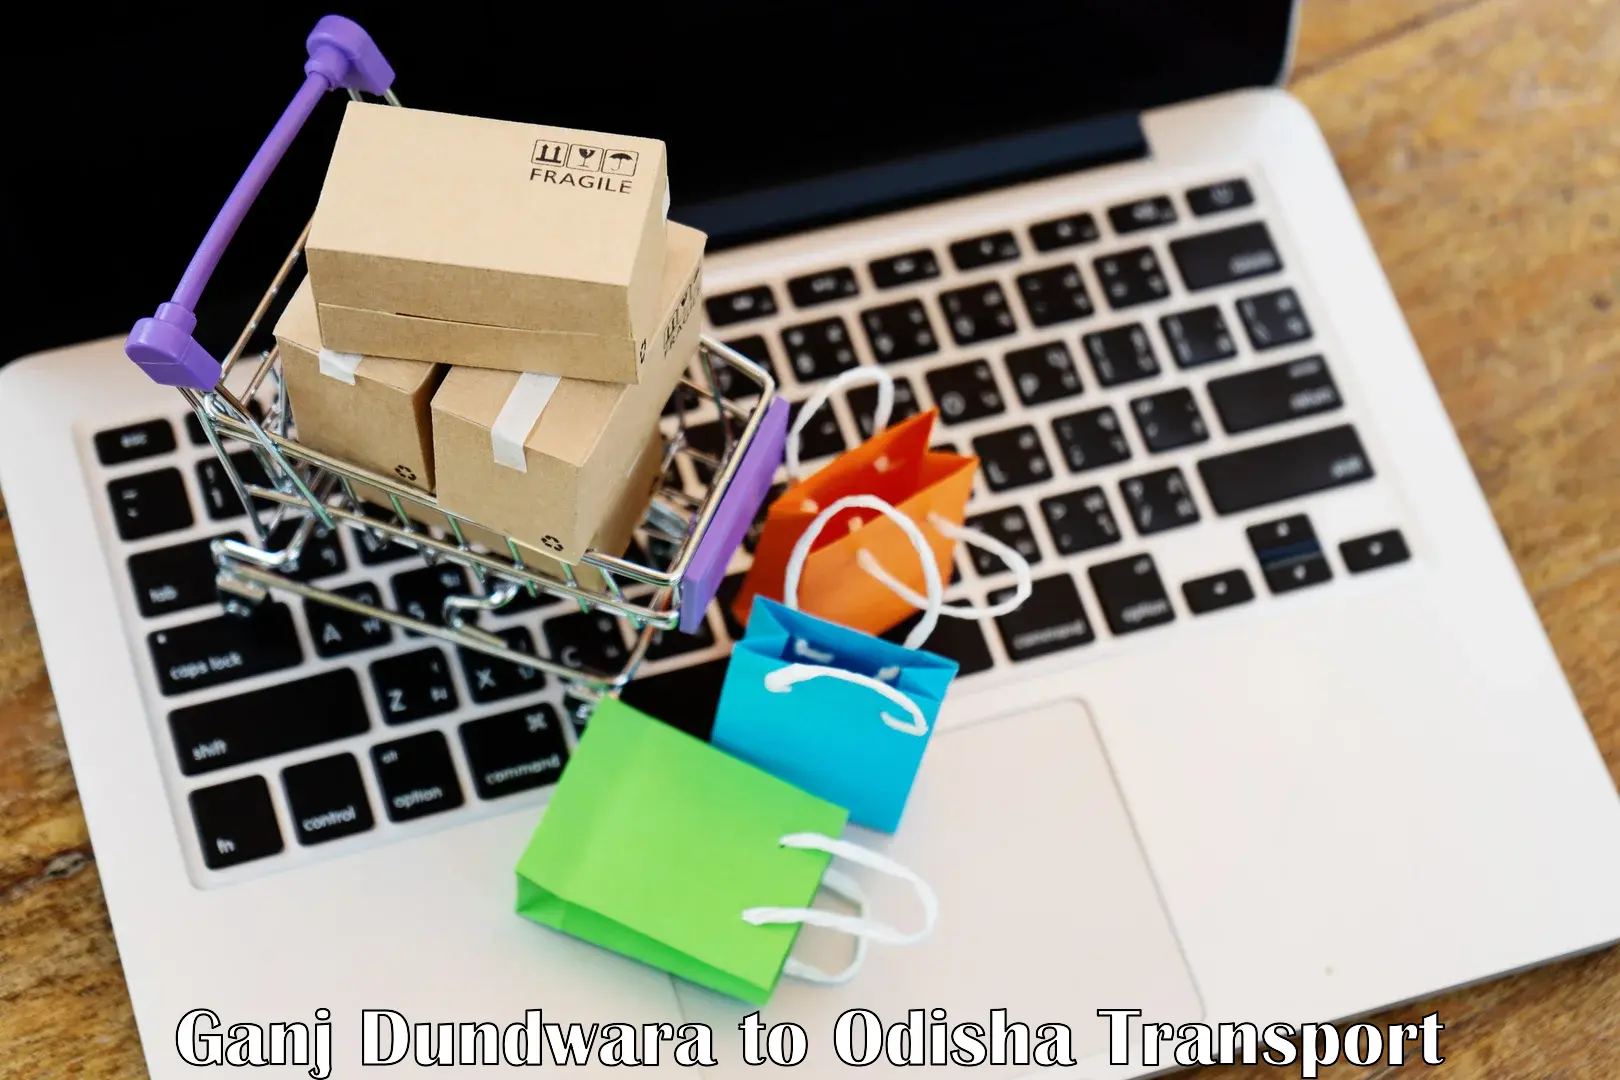 Online transport service Ganj Dundwara to Bonth